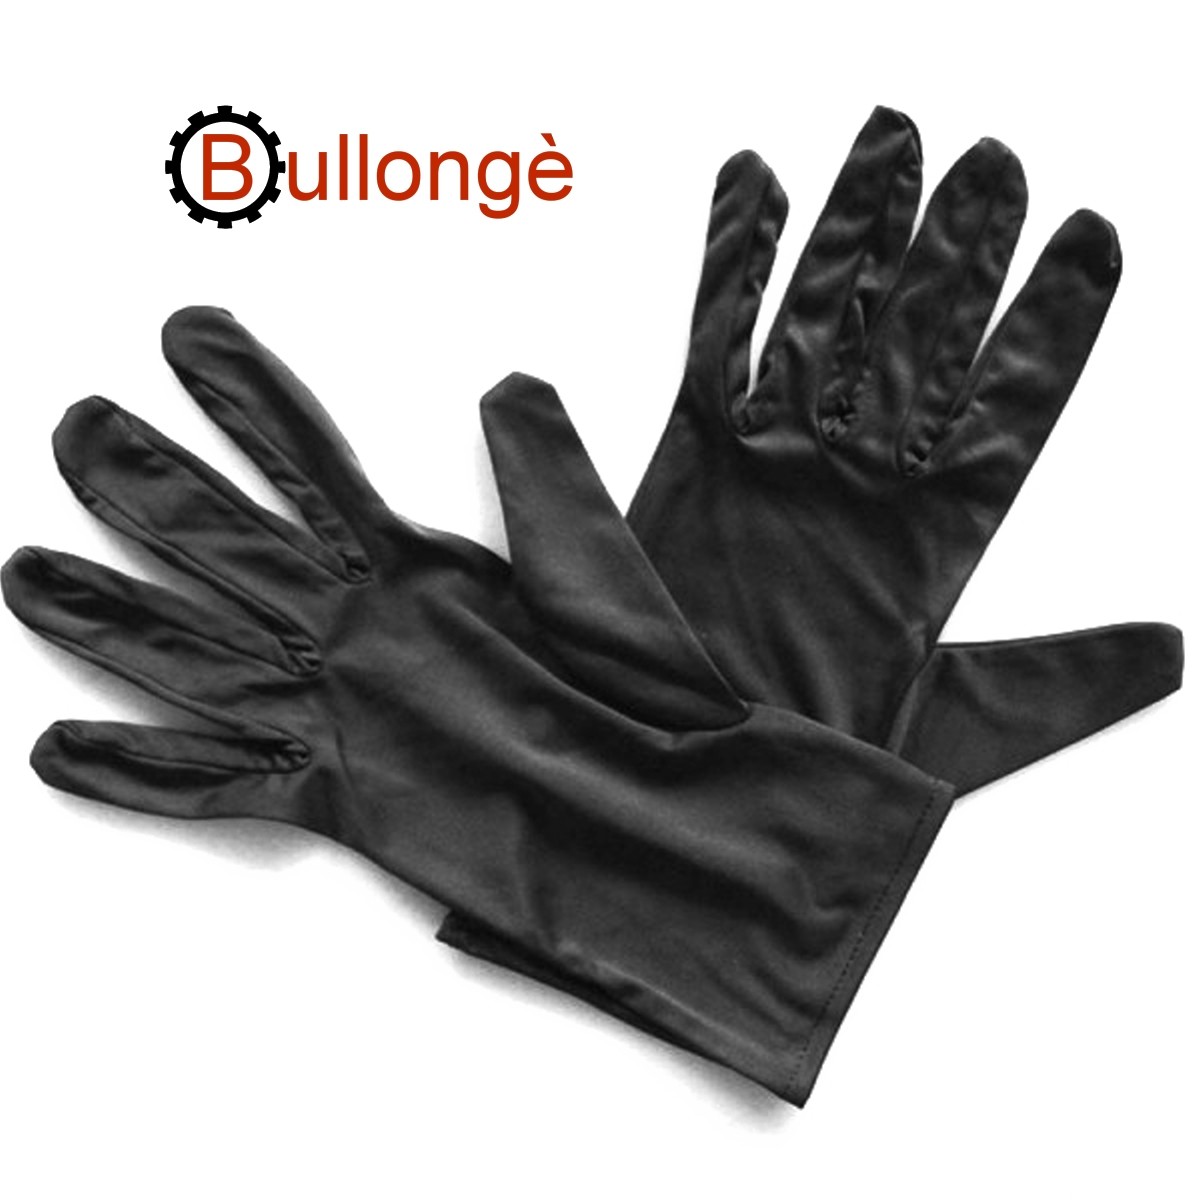 BULLONGÈ Microfaser Handschuhe WATCHLINE W Gr.12 reinweiß 